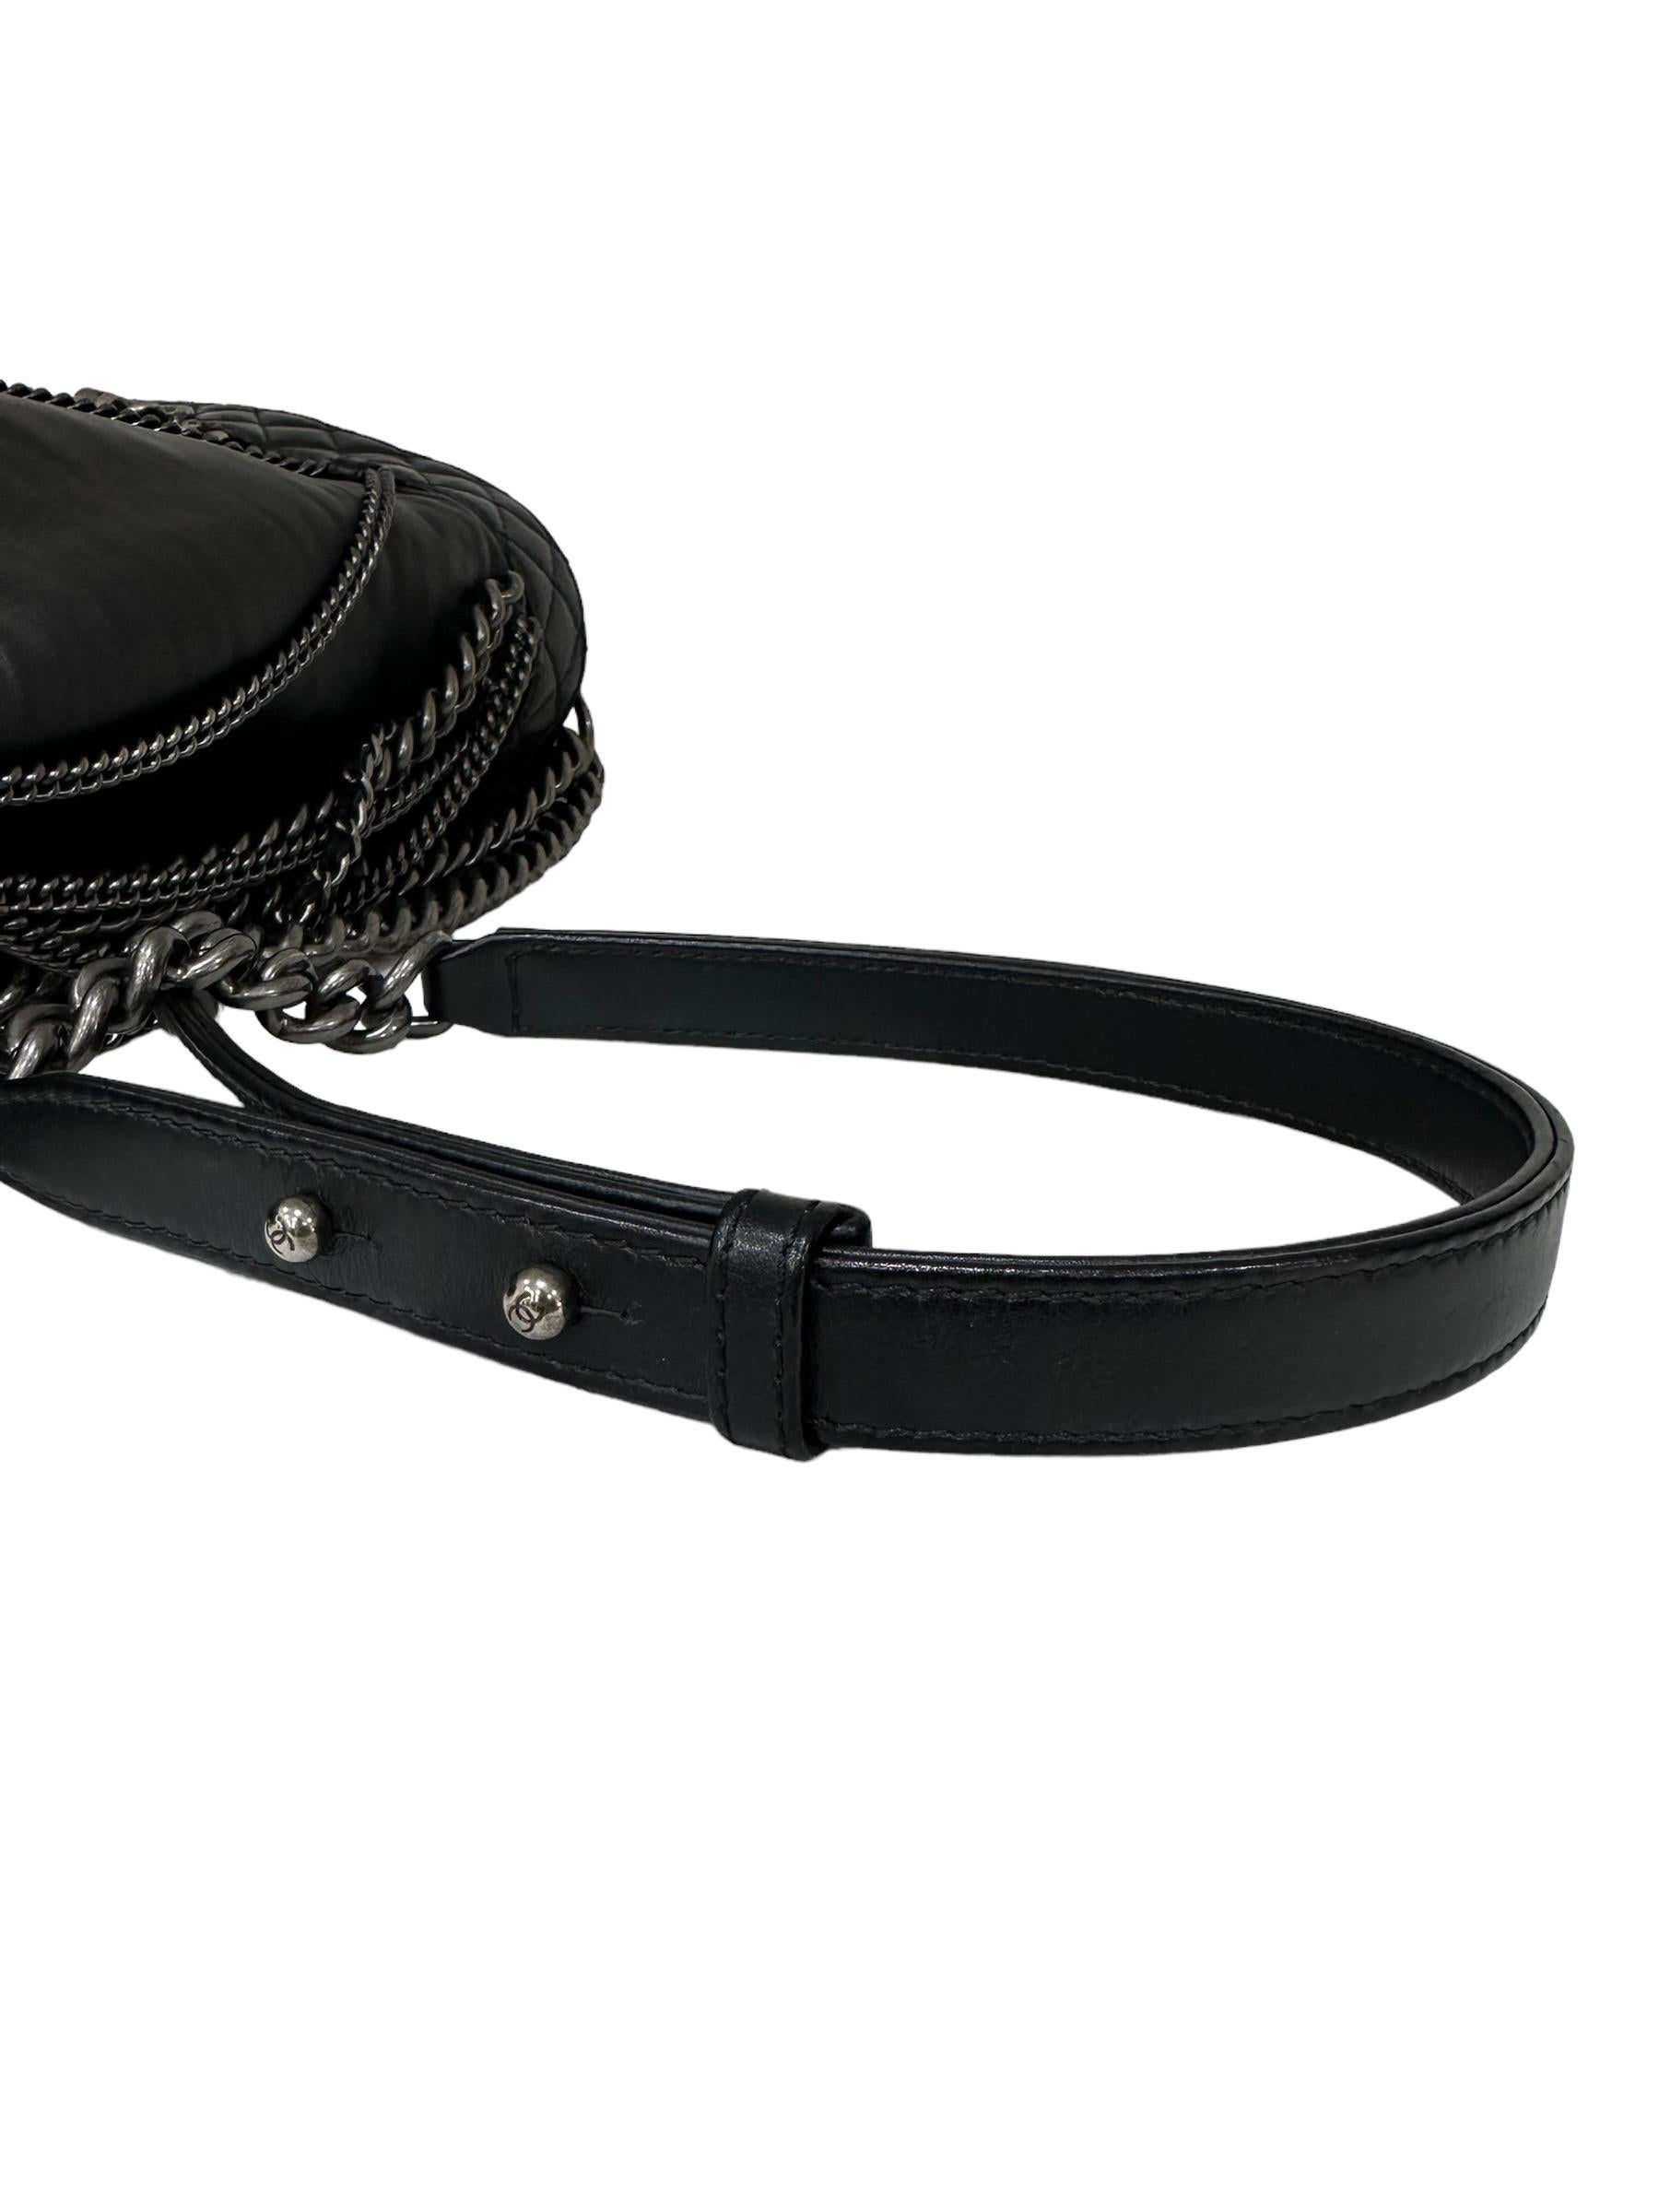 2014 Chanel Boy XL Limited Edition Shoulder Bag Multi Chains 6